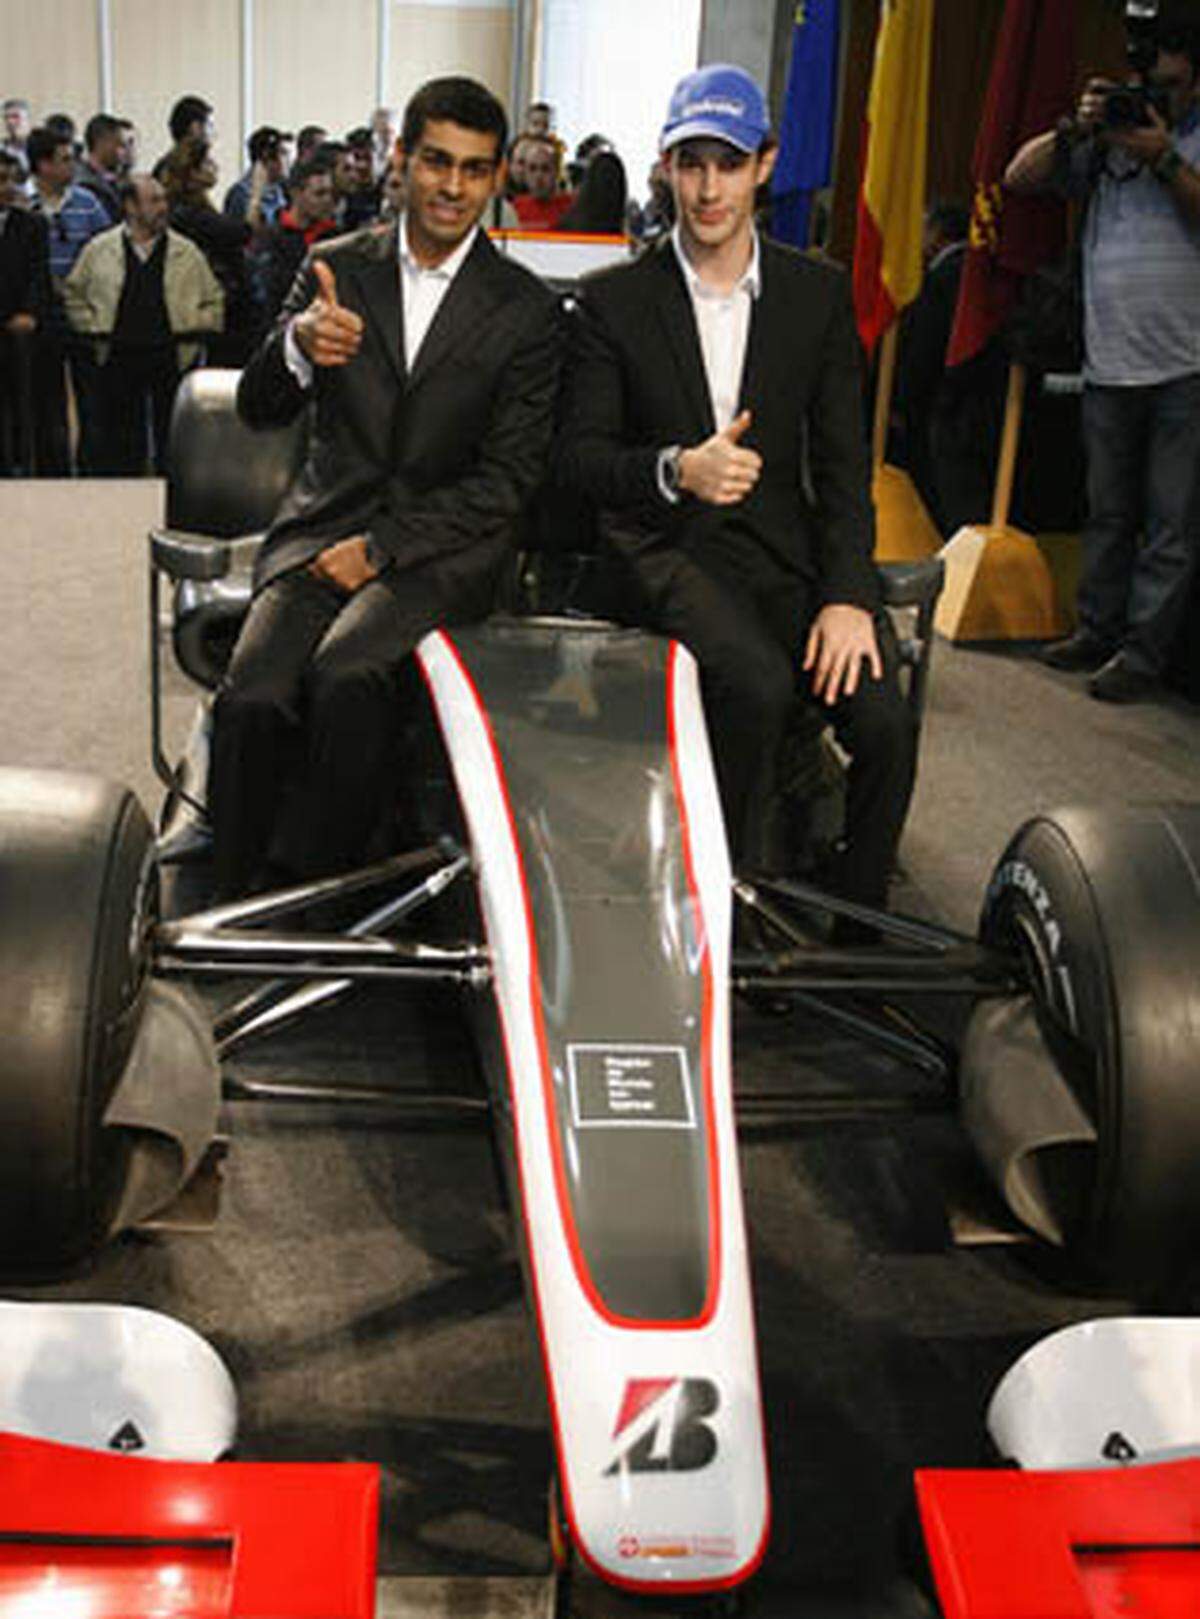 Am 4. März wurde der neue Kollege von Bruno Senna, des Neffen von Legende Ayrton Senna, vorgestellt: Das zweite Cockpit ging an den Inder Karun Chandhok (links), der zuletzt in der GP2-Klasse startete. Am selben Tag zeigte der Rennstall als letztes Team auch gleich sein neues Auto.